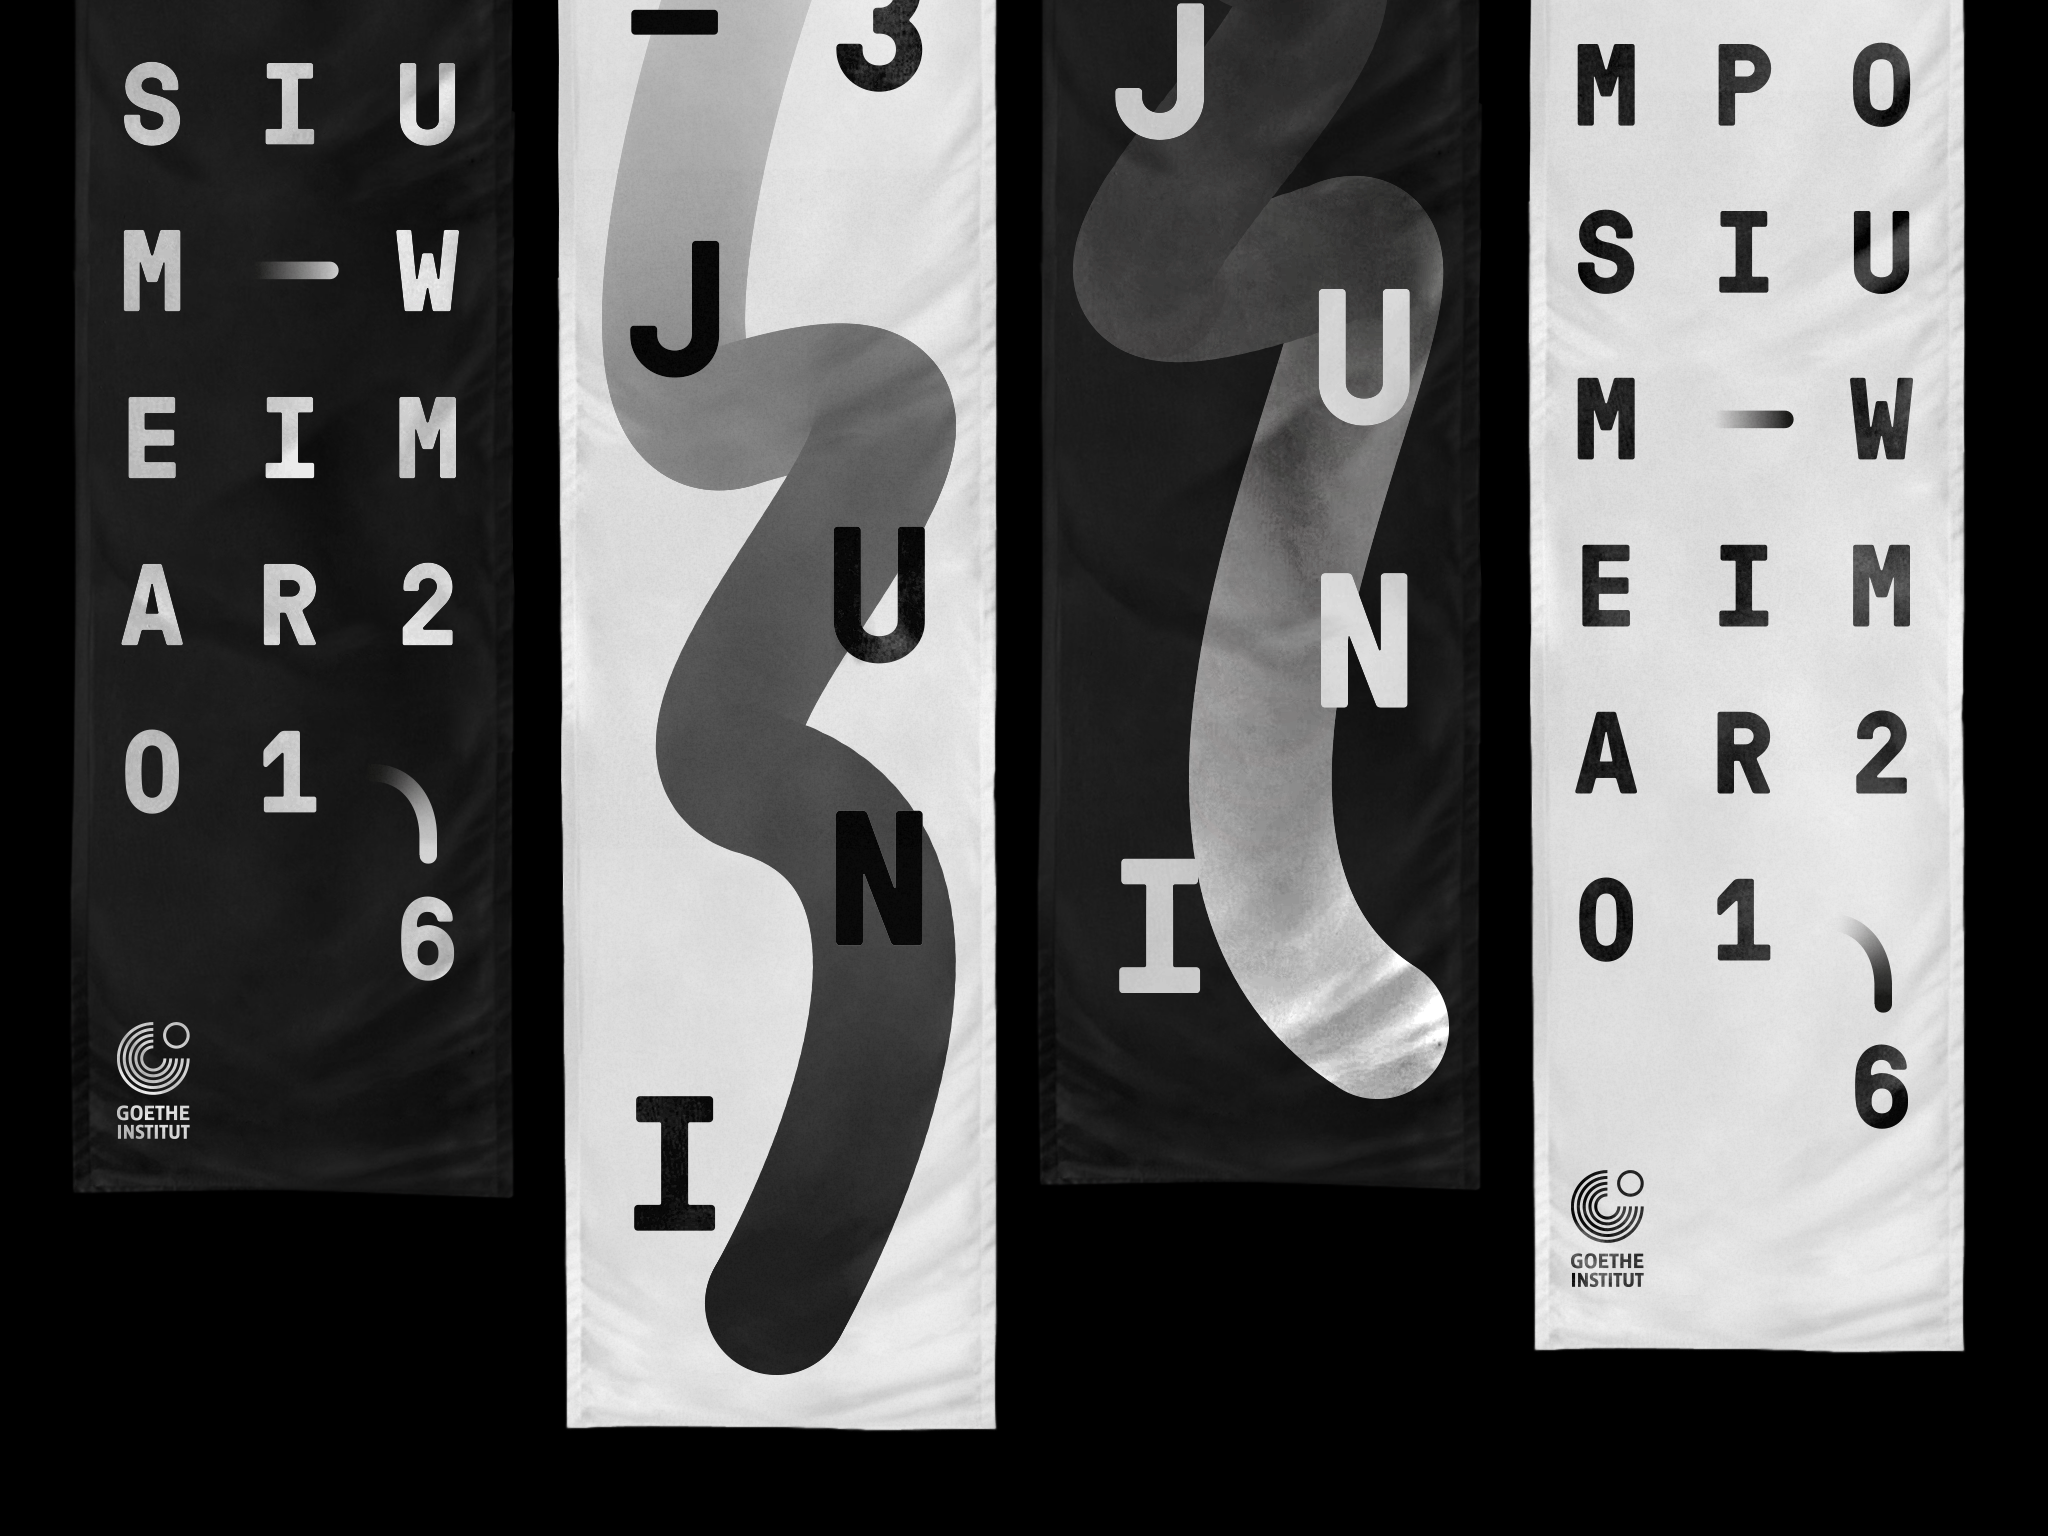 Typografische Fahnen und Keyvisual-Fahnen in schwarz/weiß / Typographic flags and key visual flags in black and white